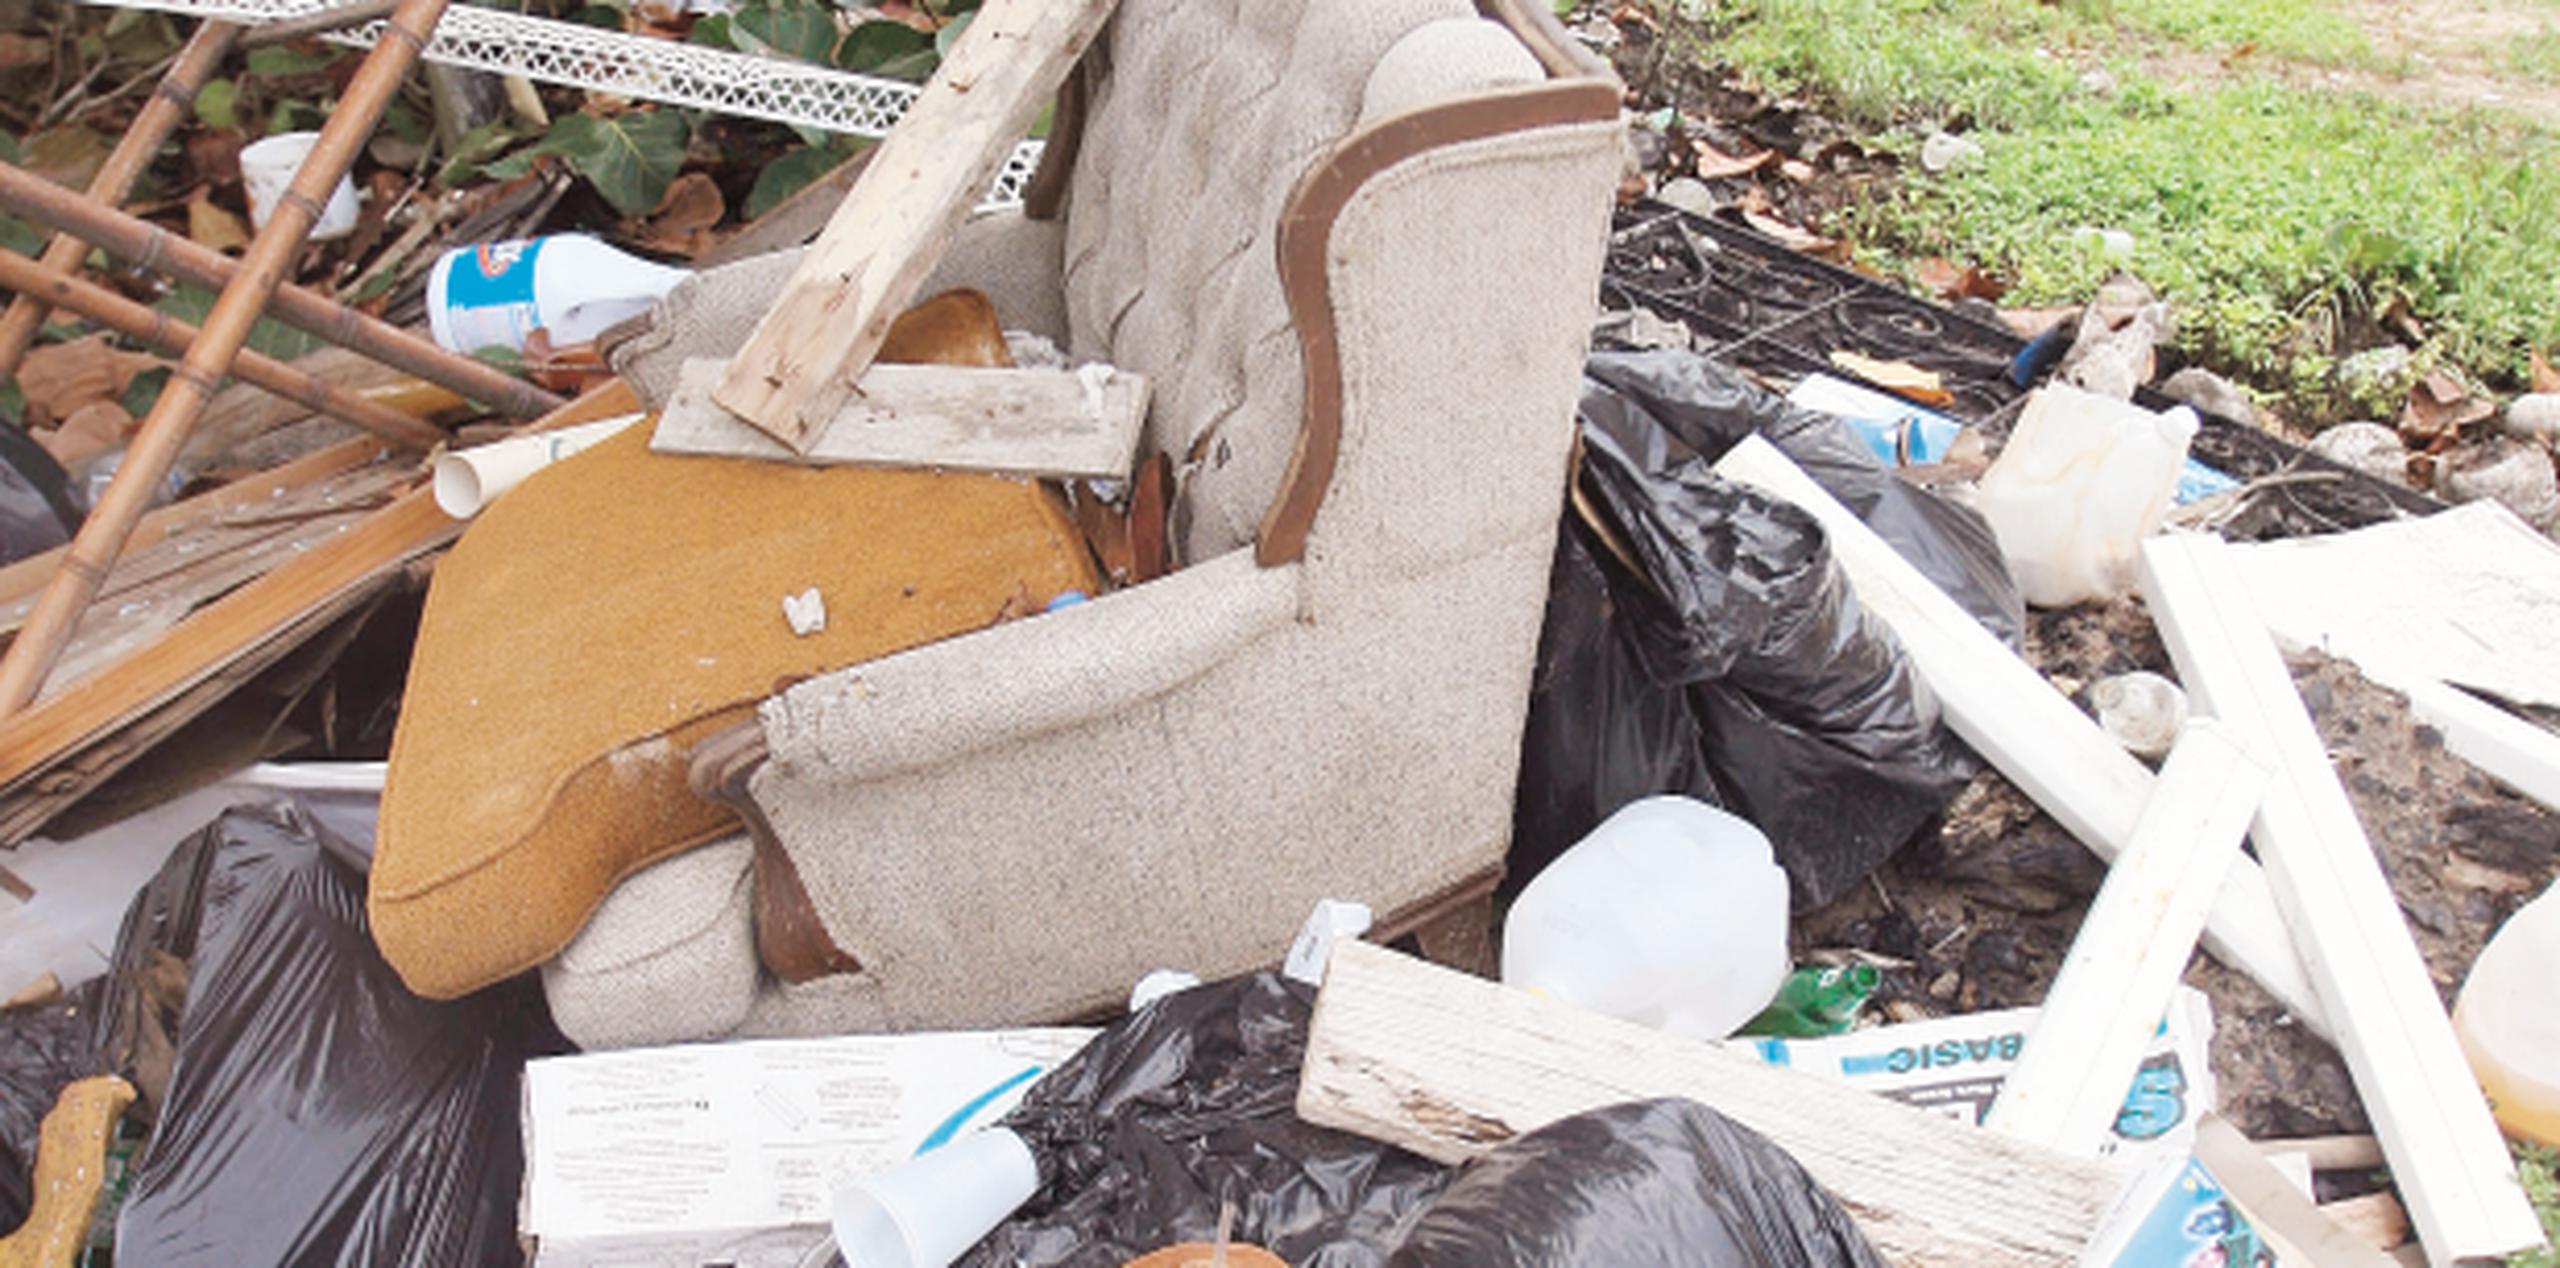 El municipio contrató la compañía ARB para que preste el servicio de recoger la basura acumulada, pero no ha resuelto la deuda que mantiene con Consolidated Waste Services. (Archivo)